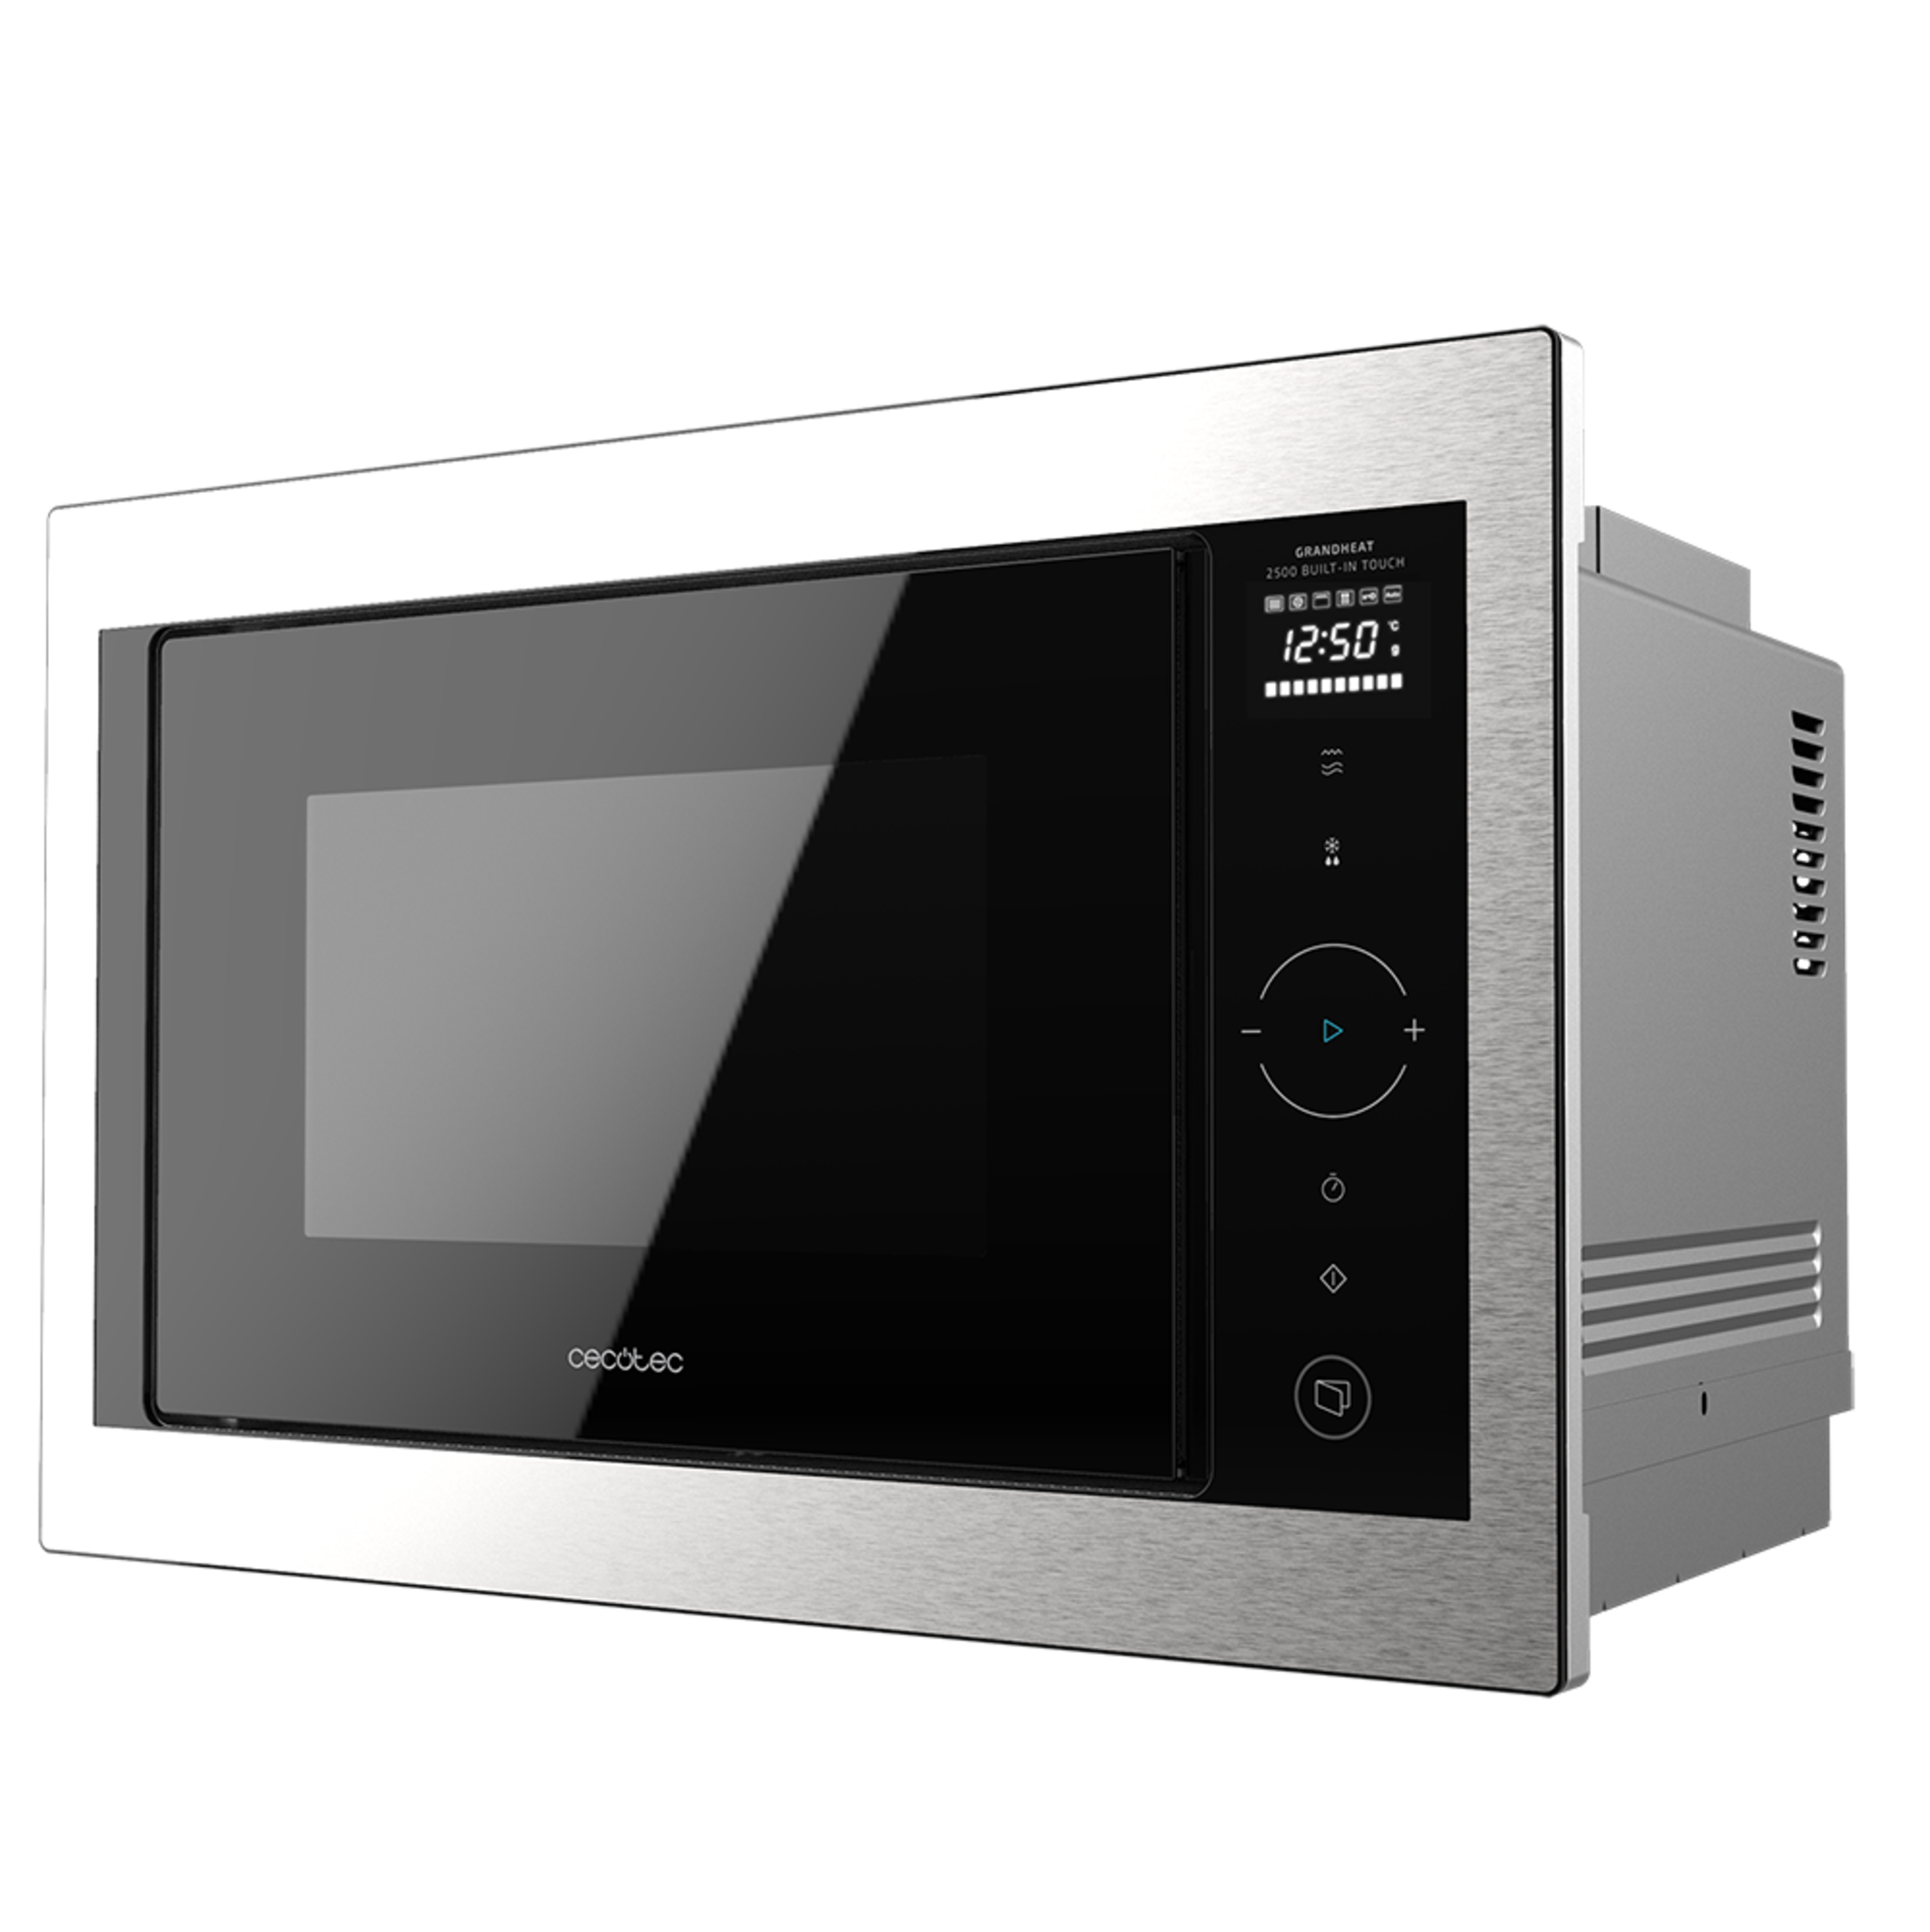 Micro-ondes numérique encastrable GrandHeat 2500 Built-in Touch SteelBlack. 900 W, encastré, 25 L, gril de 1000 W, 8 fonctions préconfigurées, minuterie et panneau de contrôle tactile.